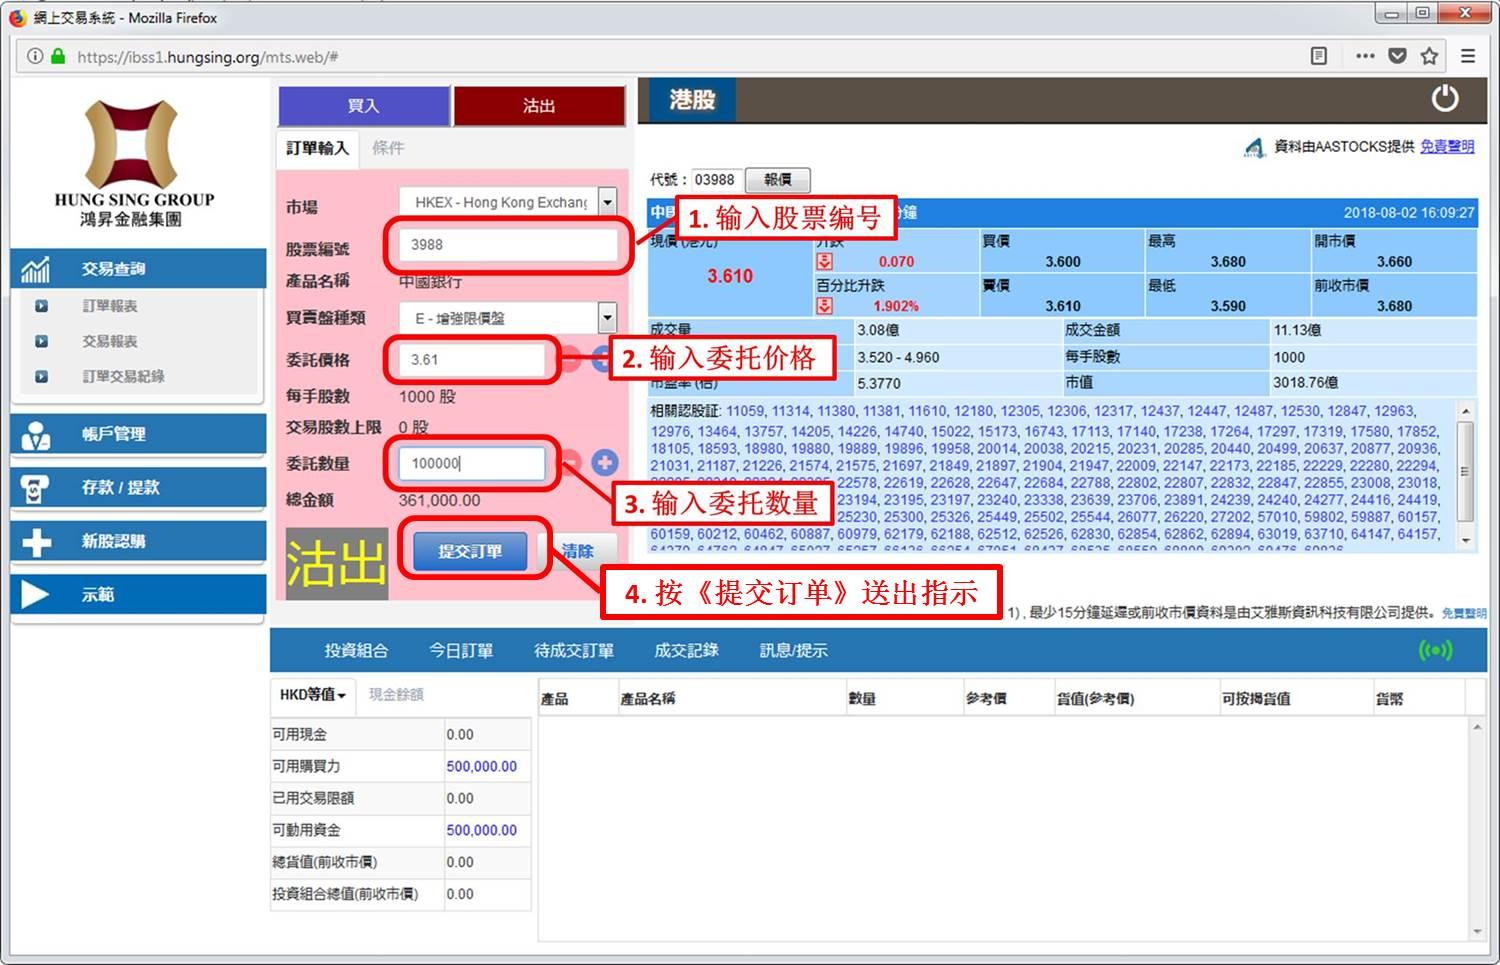 鴻昇網上交易系統 - 交易圖例 (沽貨)